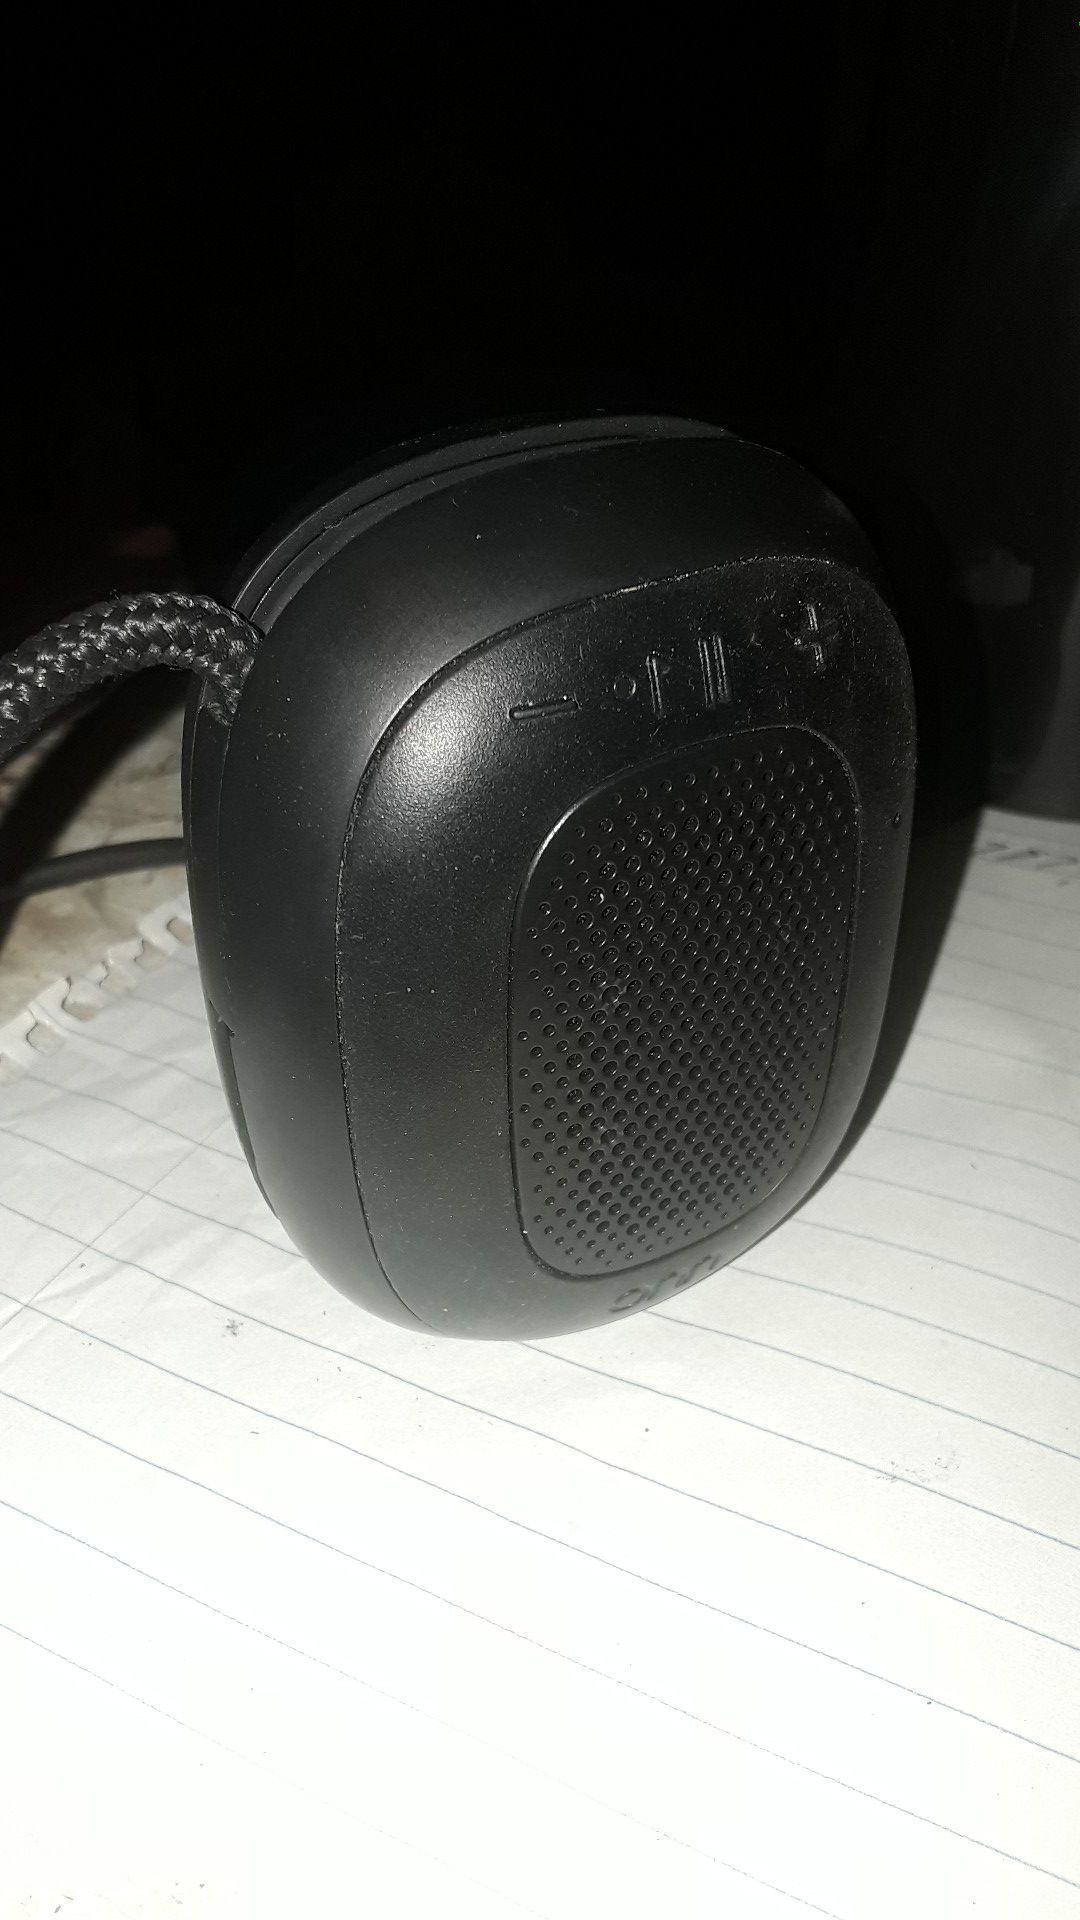 Onn Bluetooth speaker